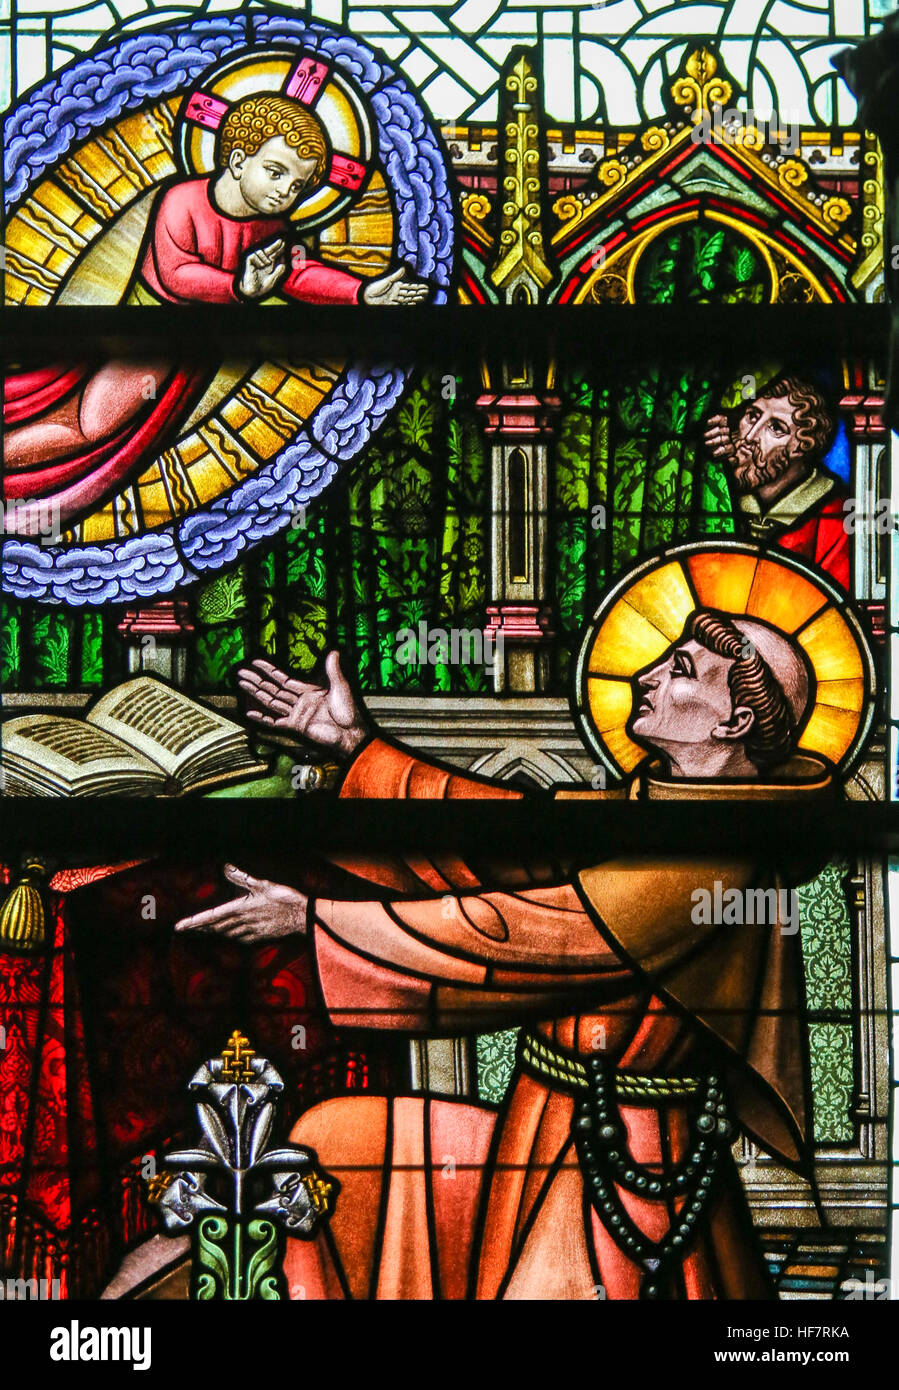 Glasmalerei-Fenster Darstellung des Heiligen Antonius von Padua und das Jesuskind in der Kathedrale St. Bavo in Gent, Flandern, Belgien. Stockfoto